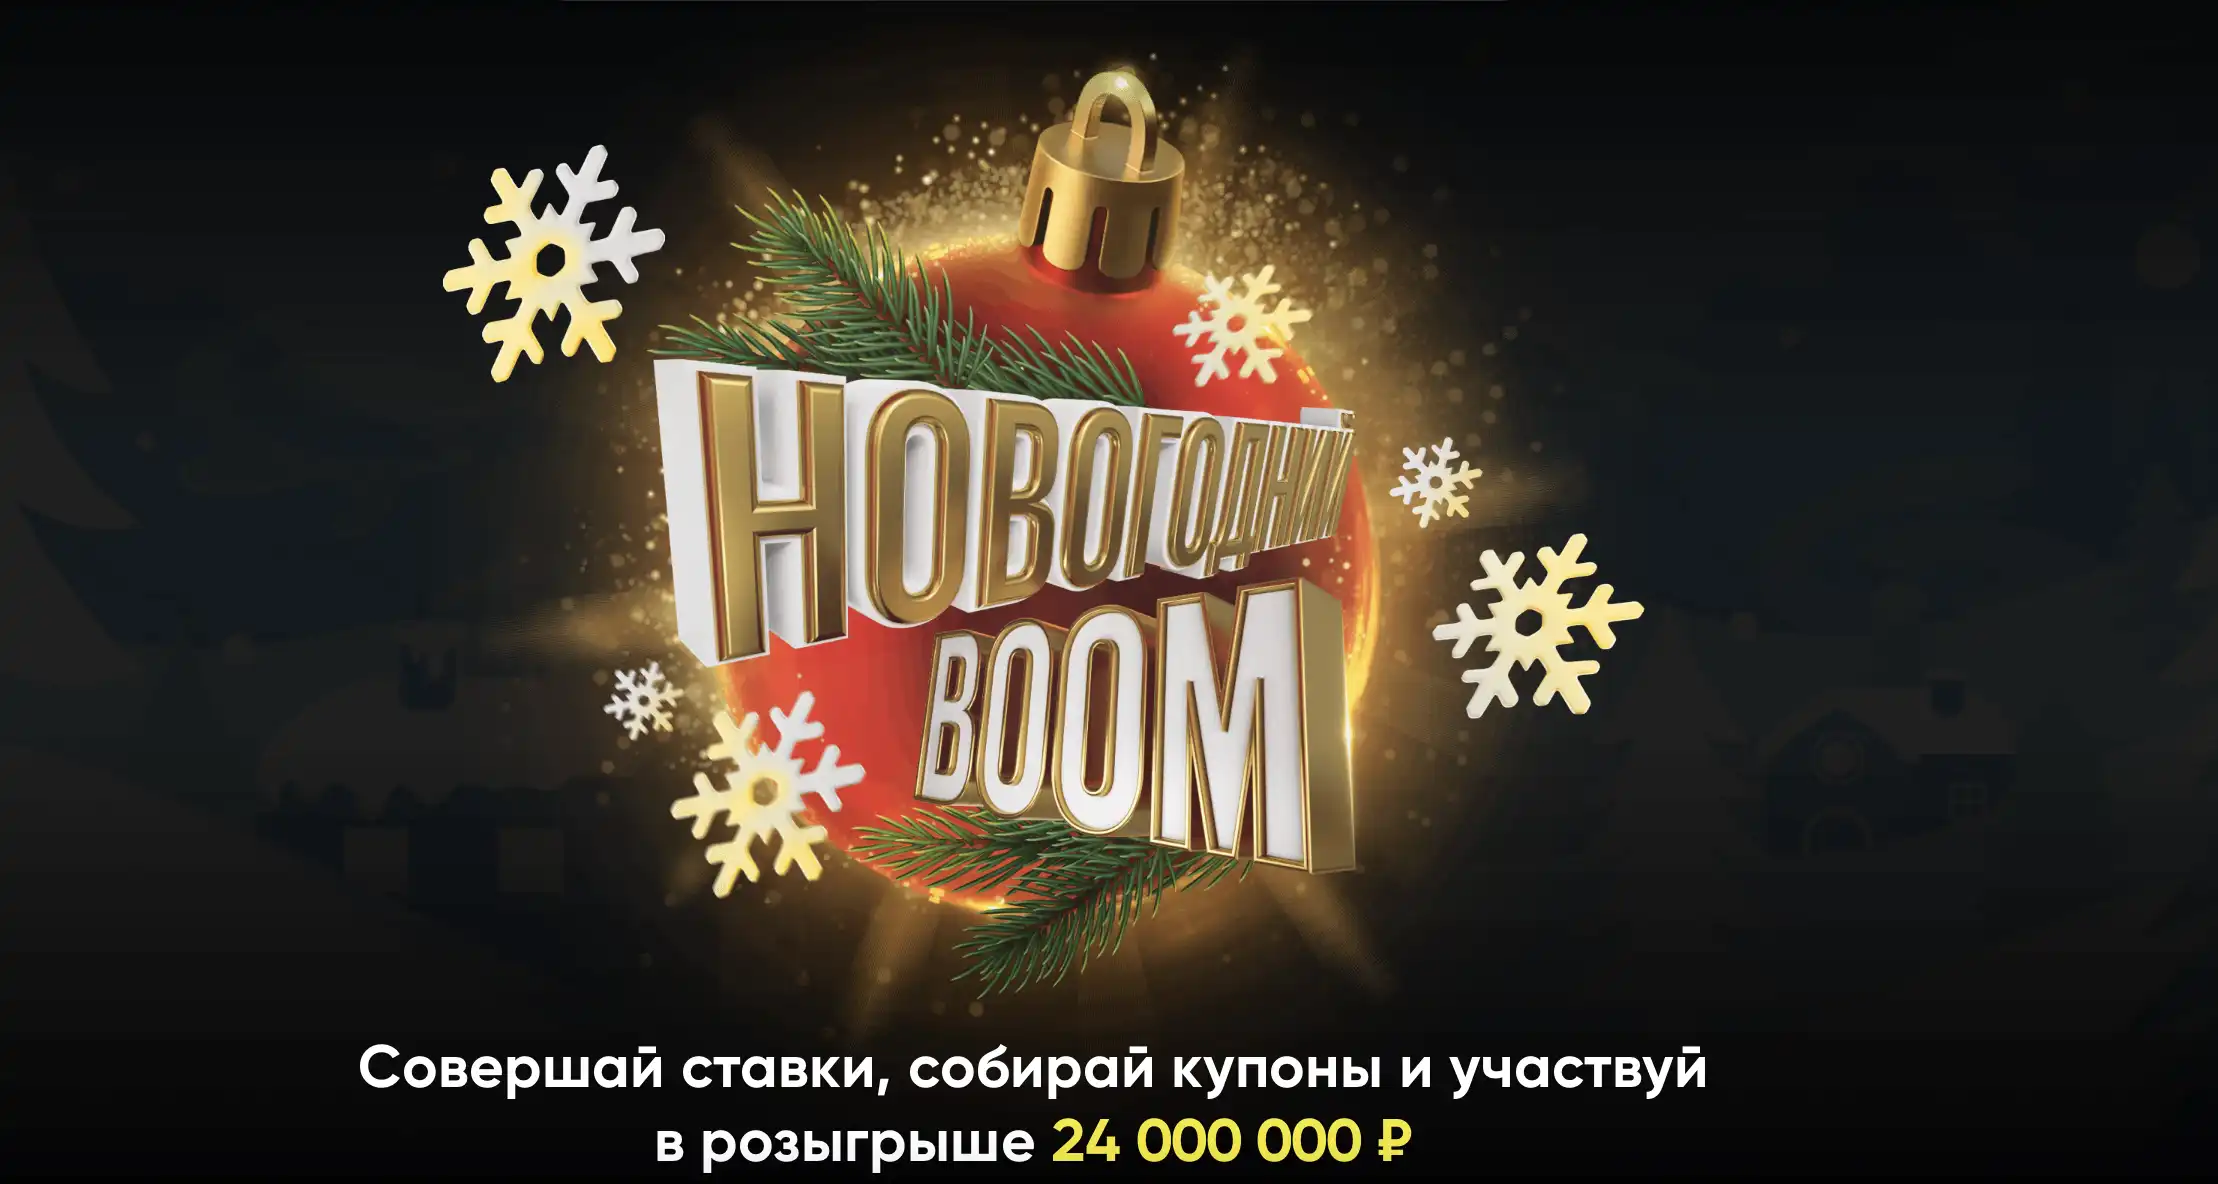 BetBoom разыгрывает 24 000 000 рублей среди всех клиентов в акции Новогодний Boom